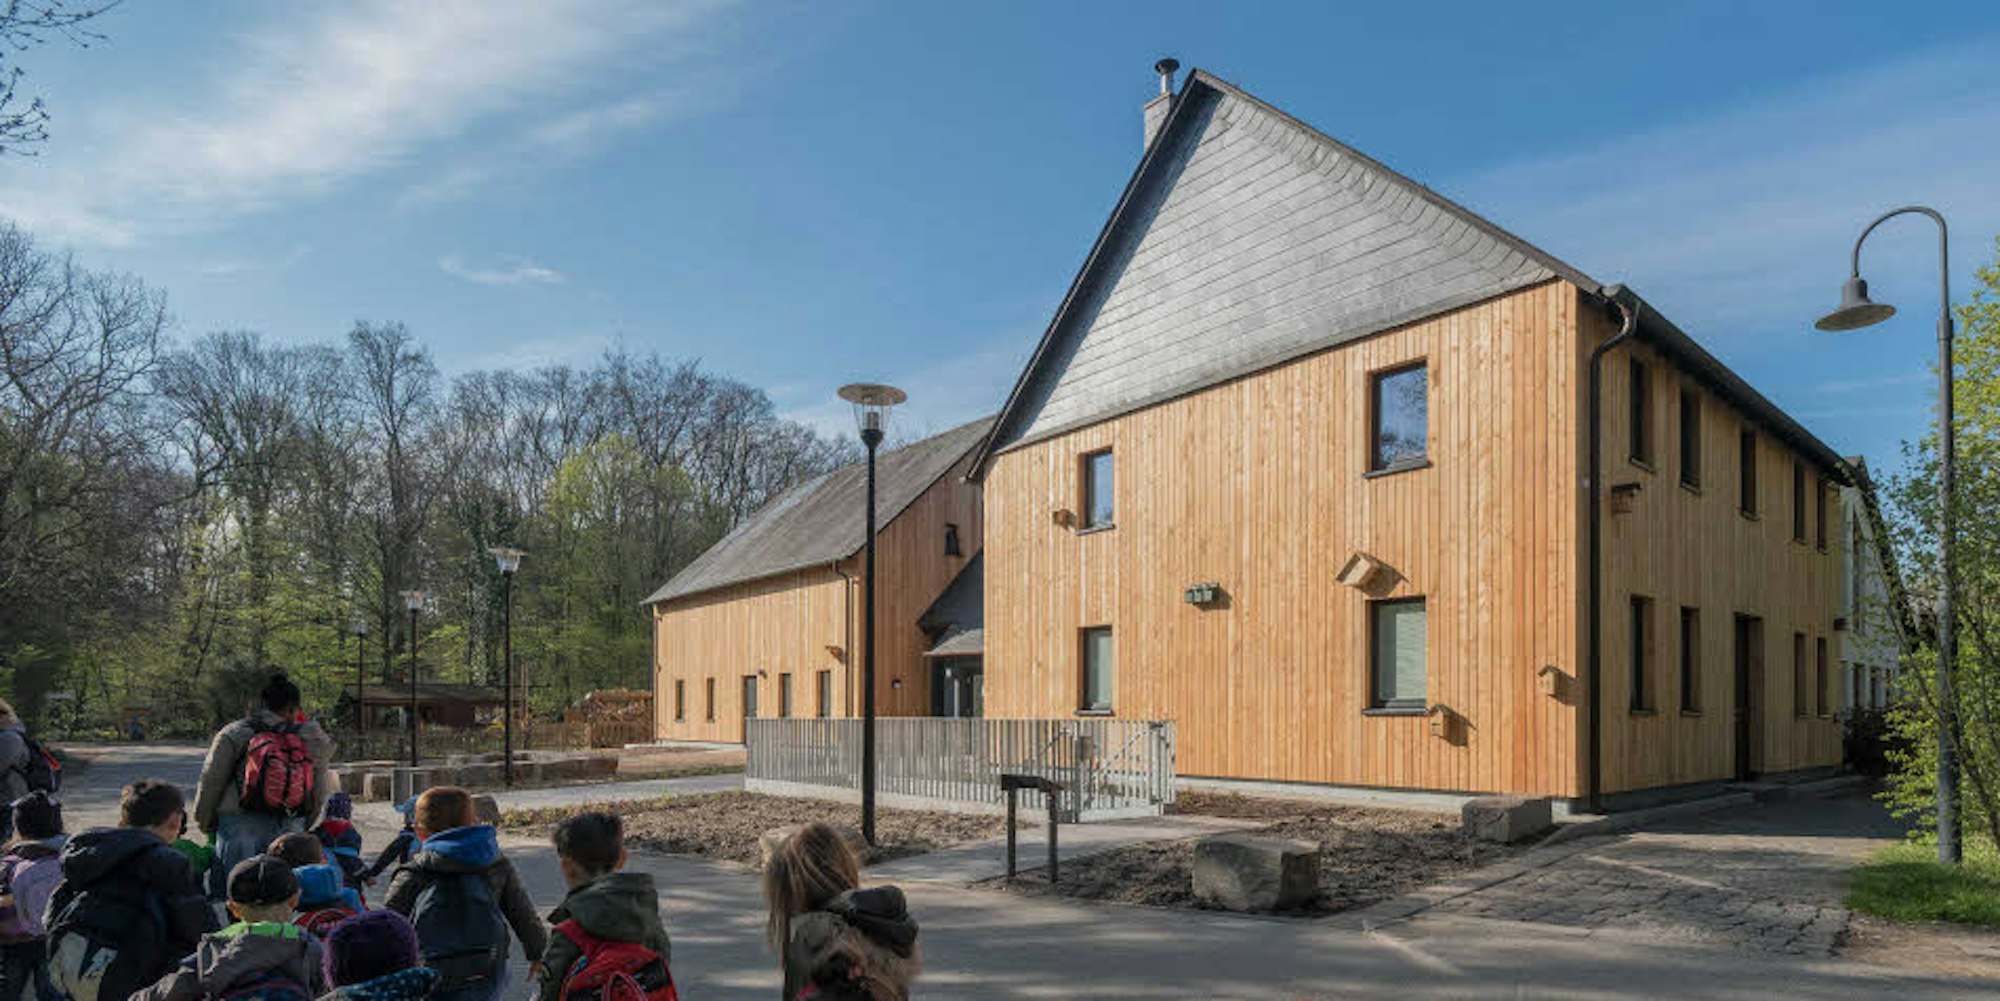 Mit völliger neuer Fassade – Holz statt Fachwerk –, präsentiert sich das Haus der Natur nach dem Umbau.